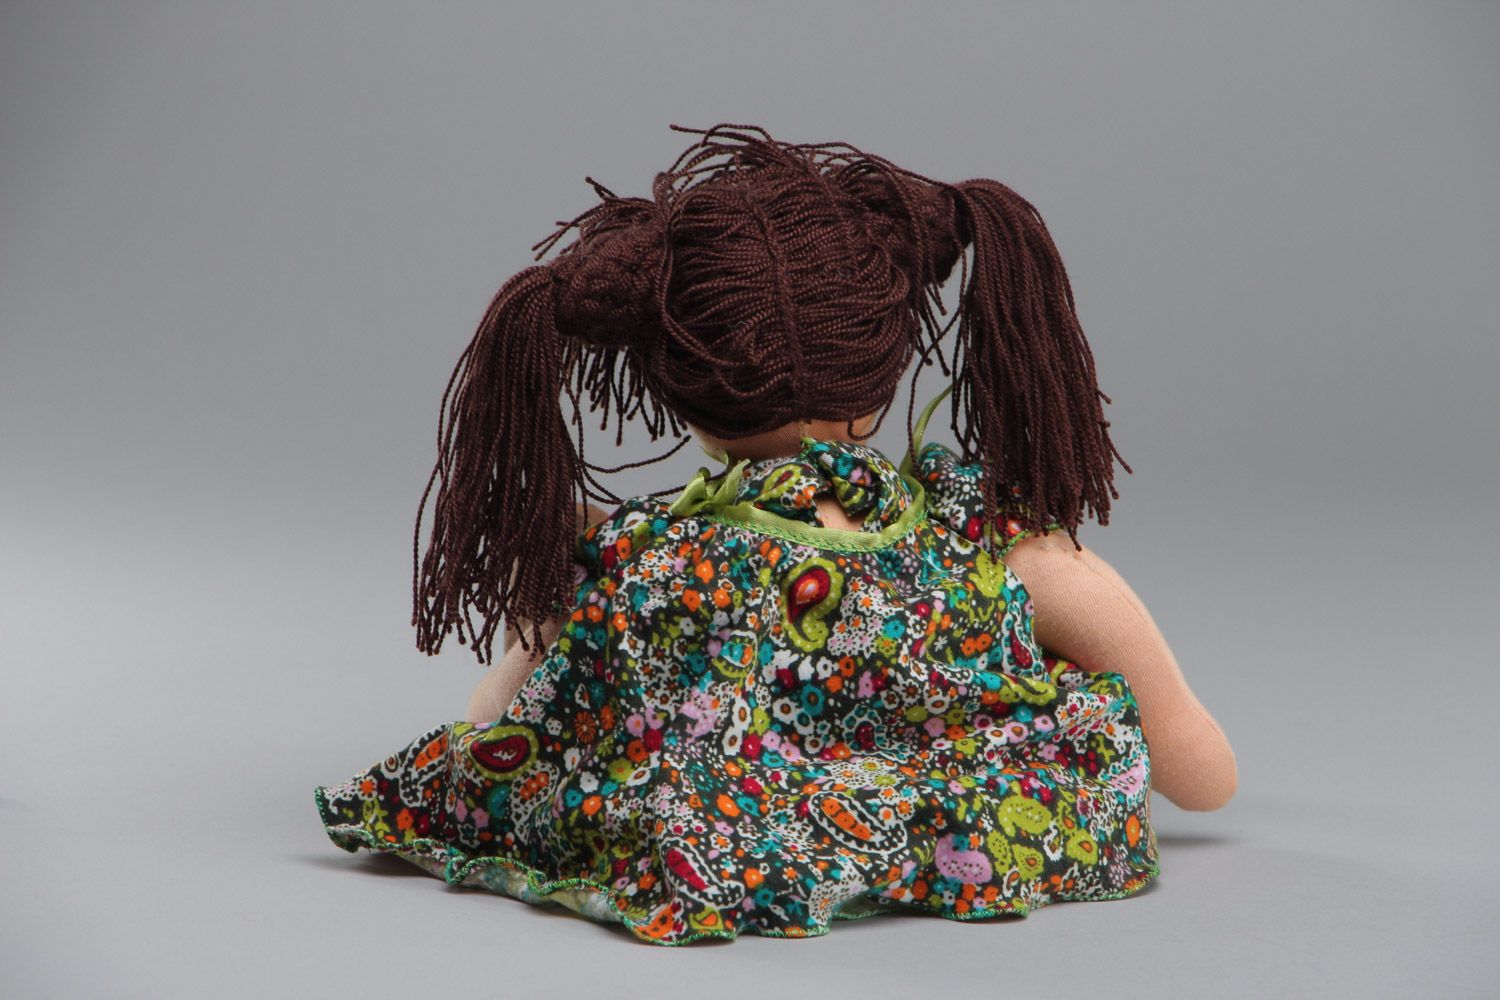 Авторская кукла игровая ручной работы из ткани в цветном платье для девочки  фото 4